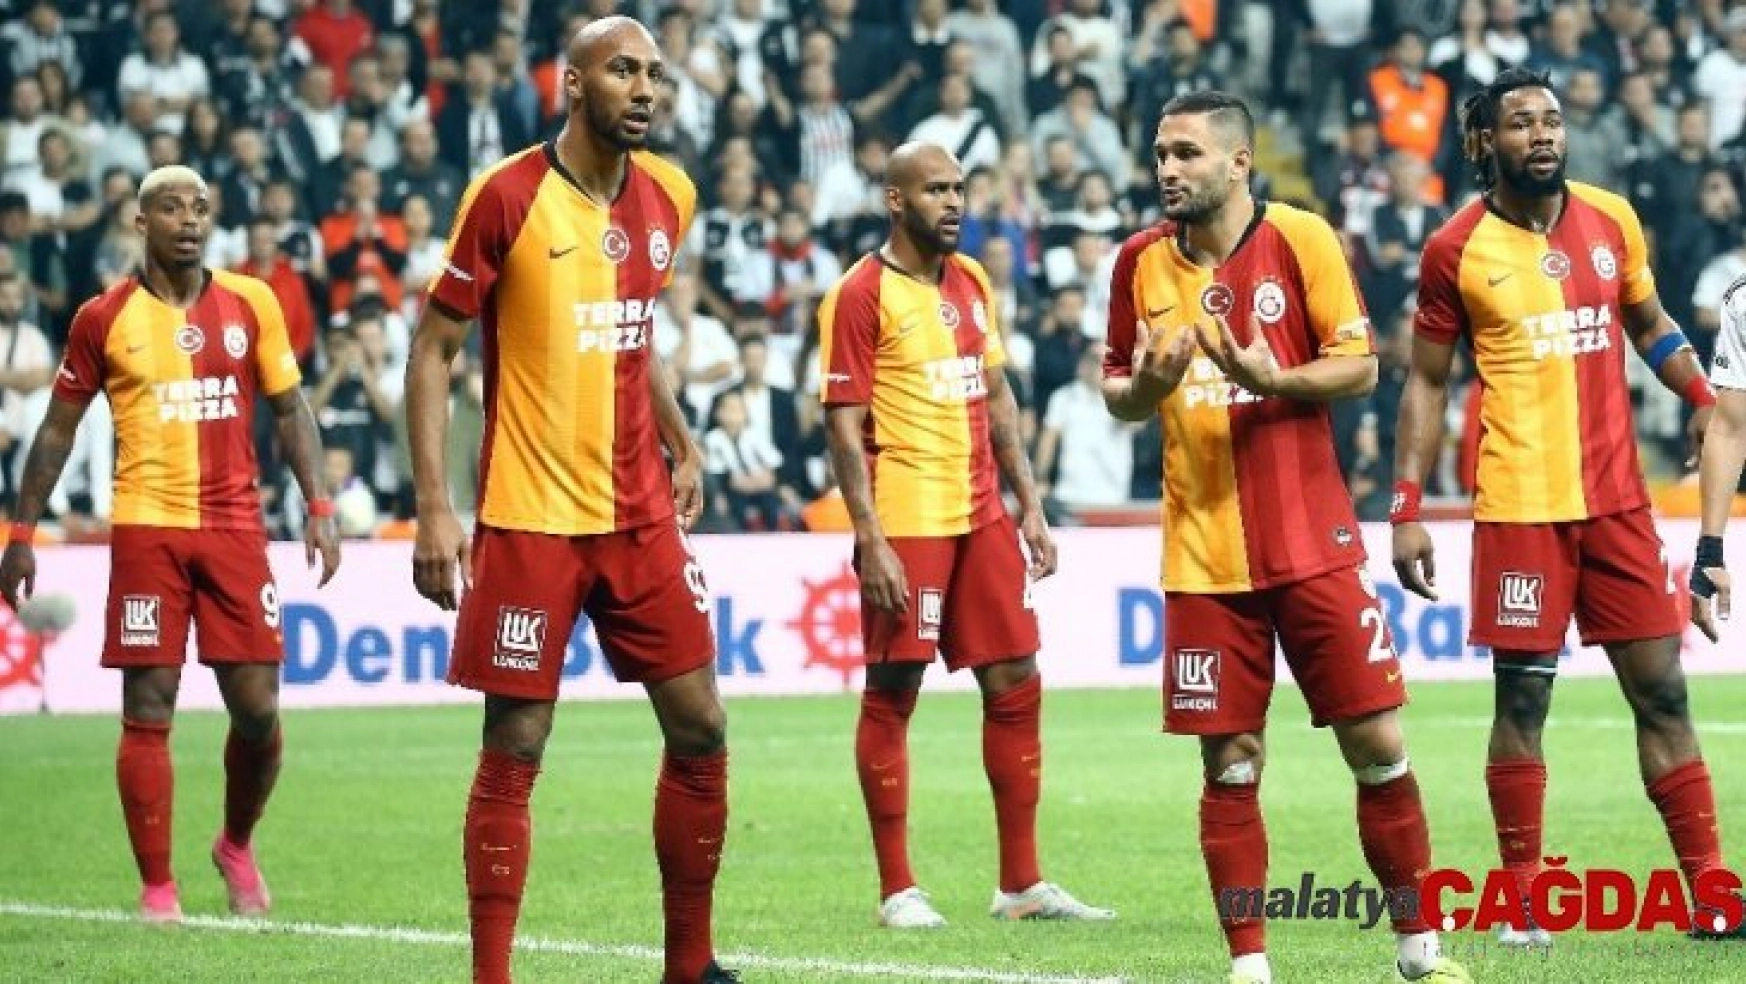 Galatasaray derbide yine gülemedi